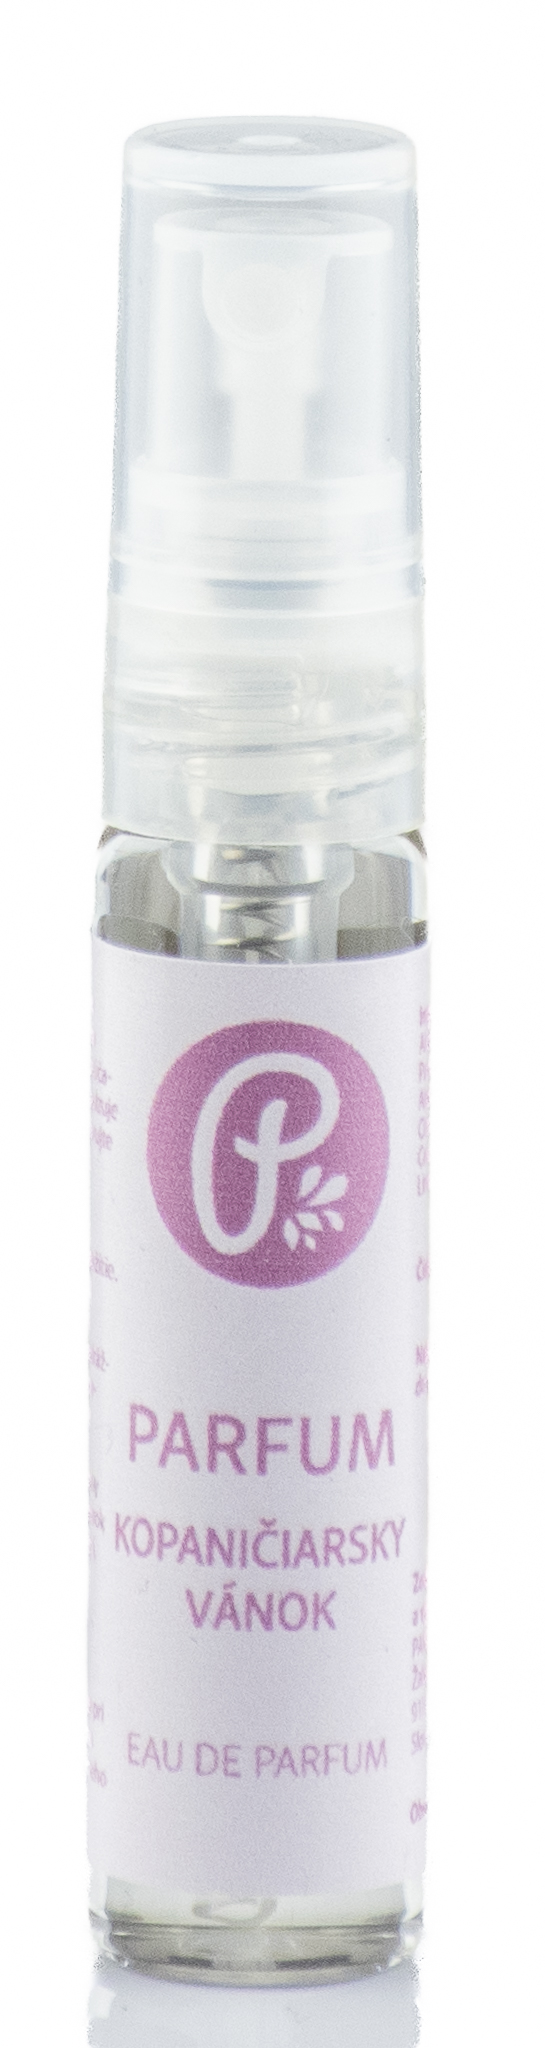 PANAKEIA Parfum (vzorka) - Kopaničiarsky vánok 5ml